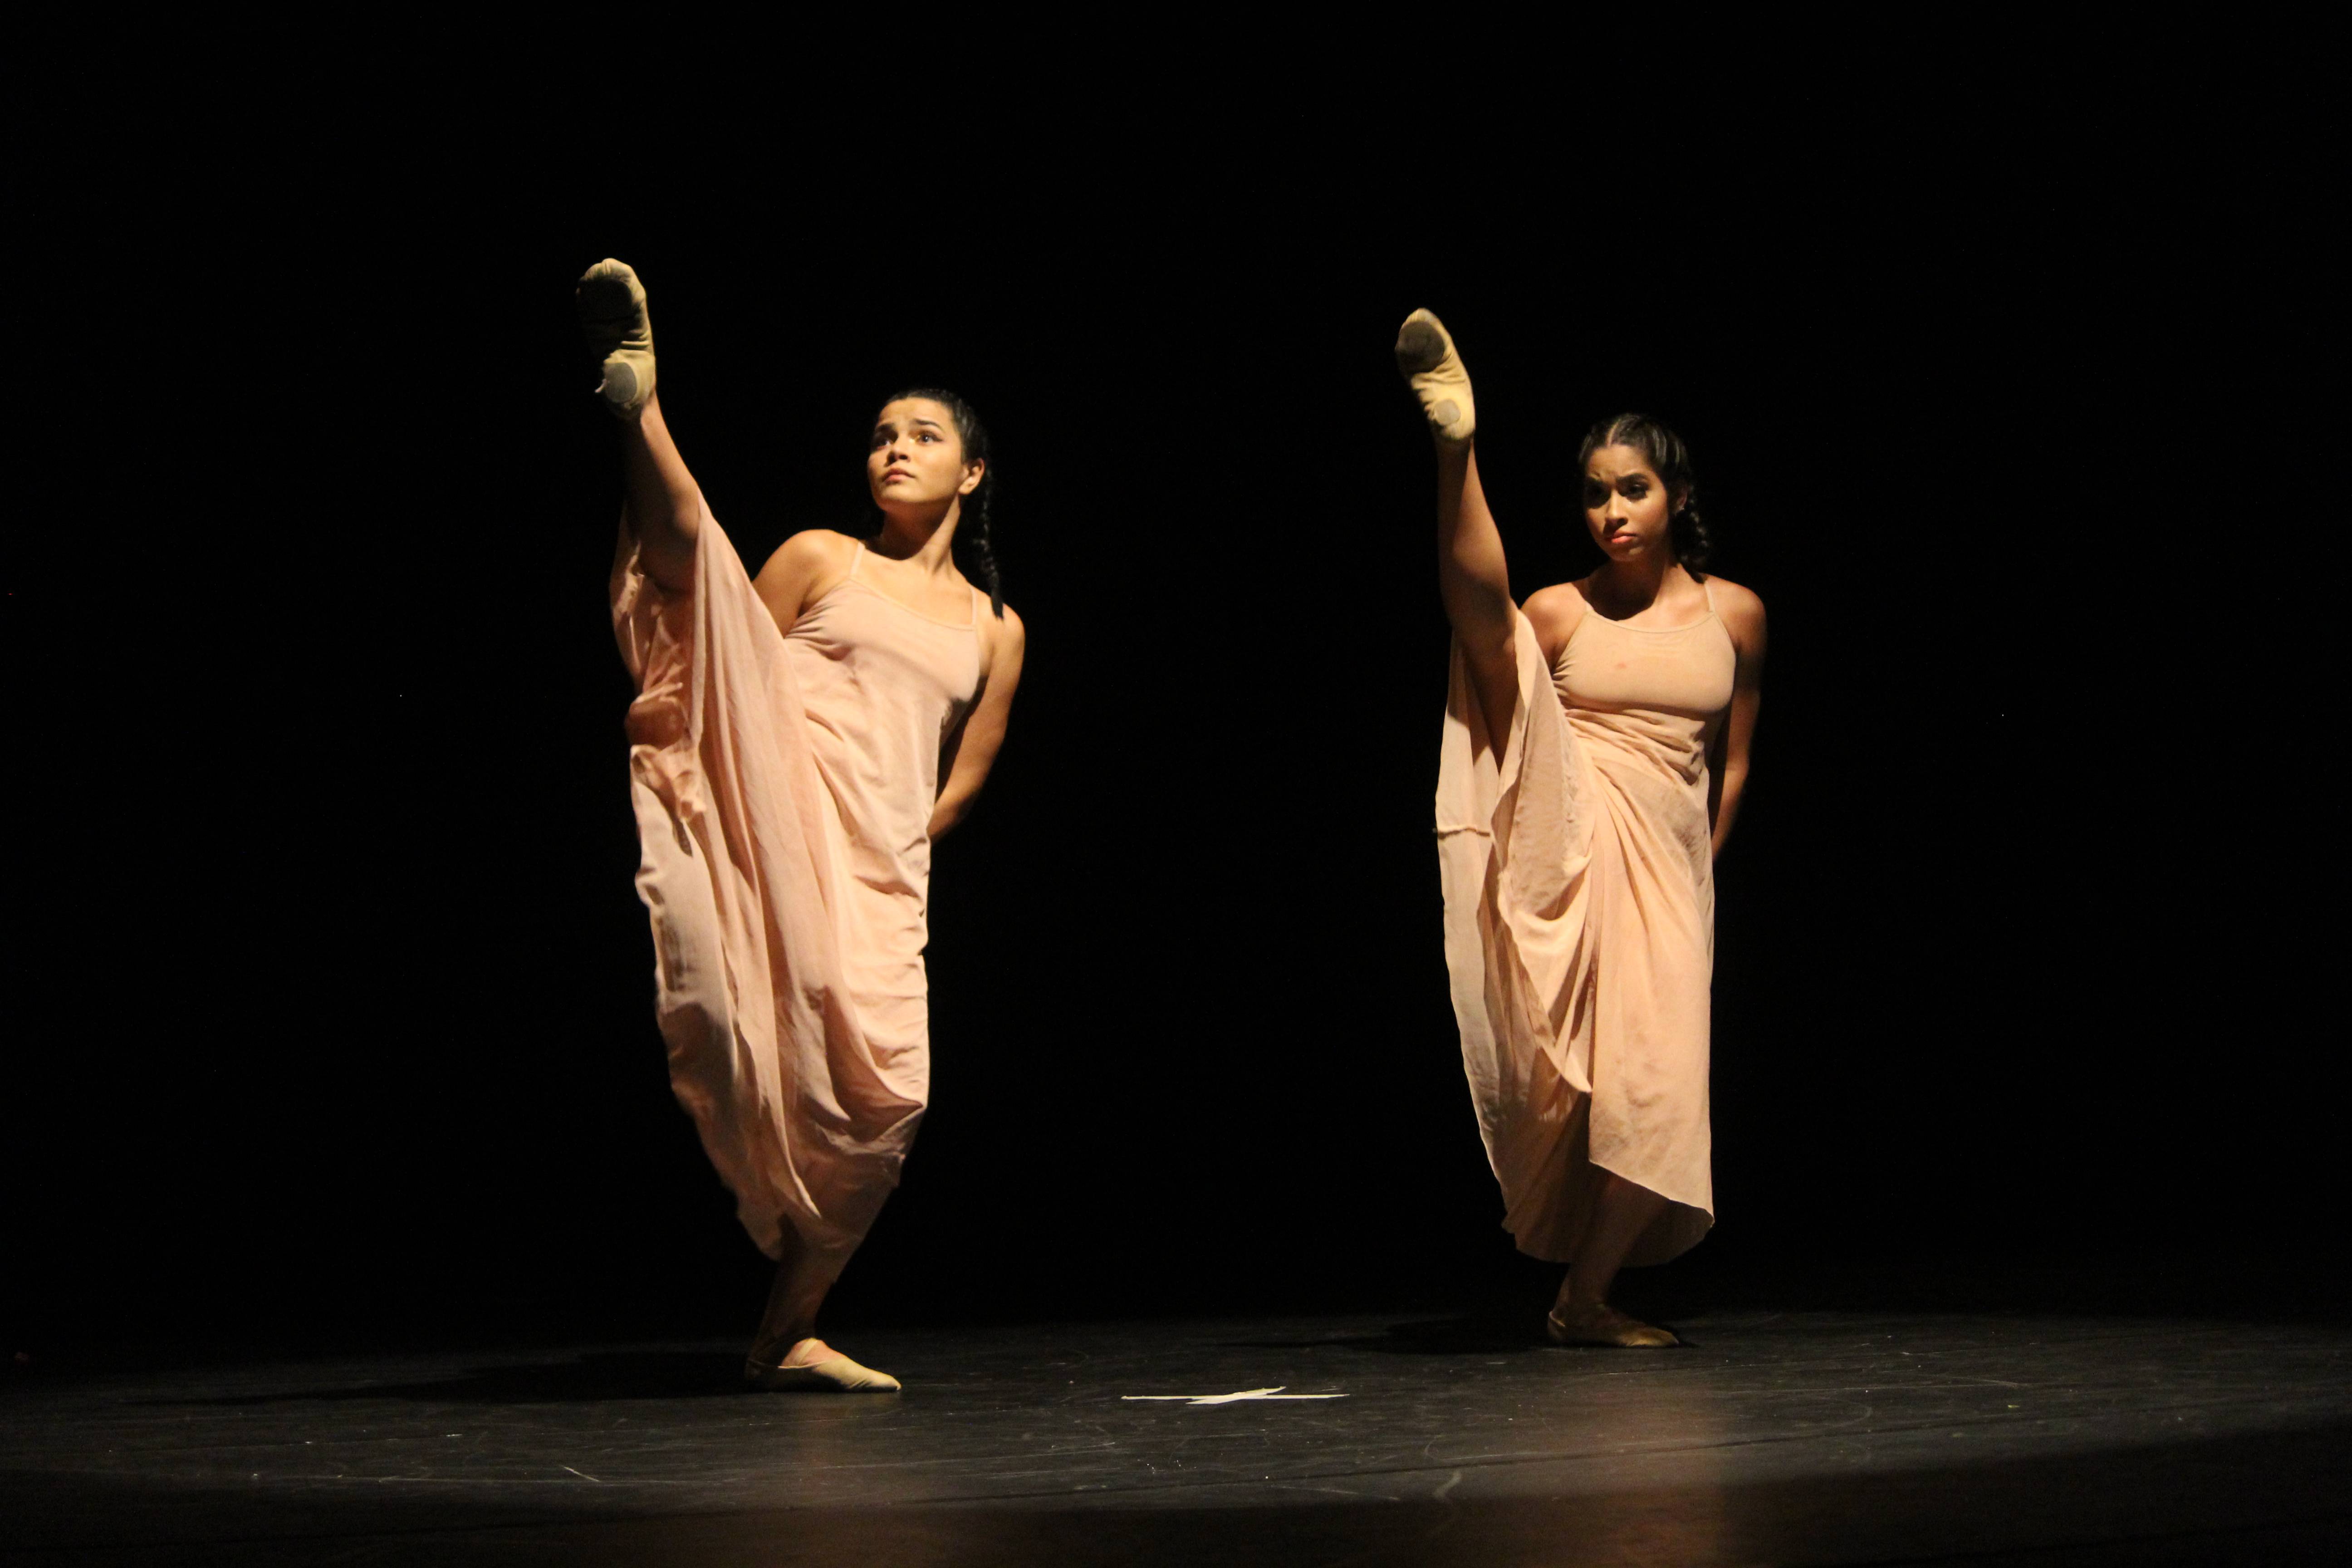 Duas bailarinas com vestidos claros fazem coreografia em um palco.